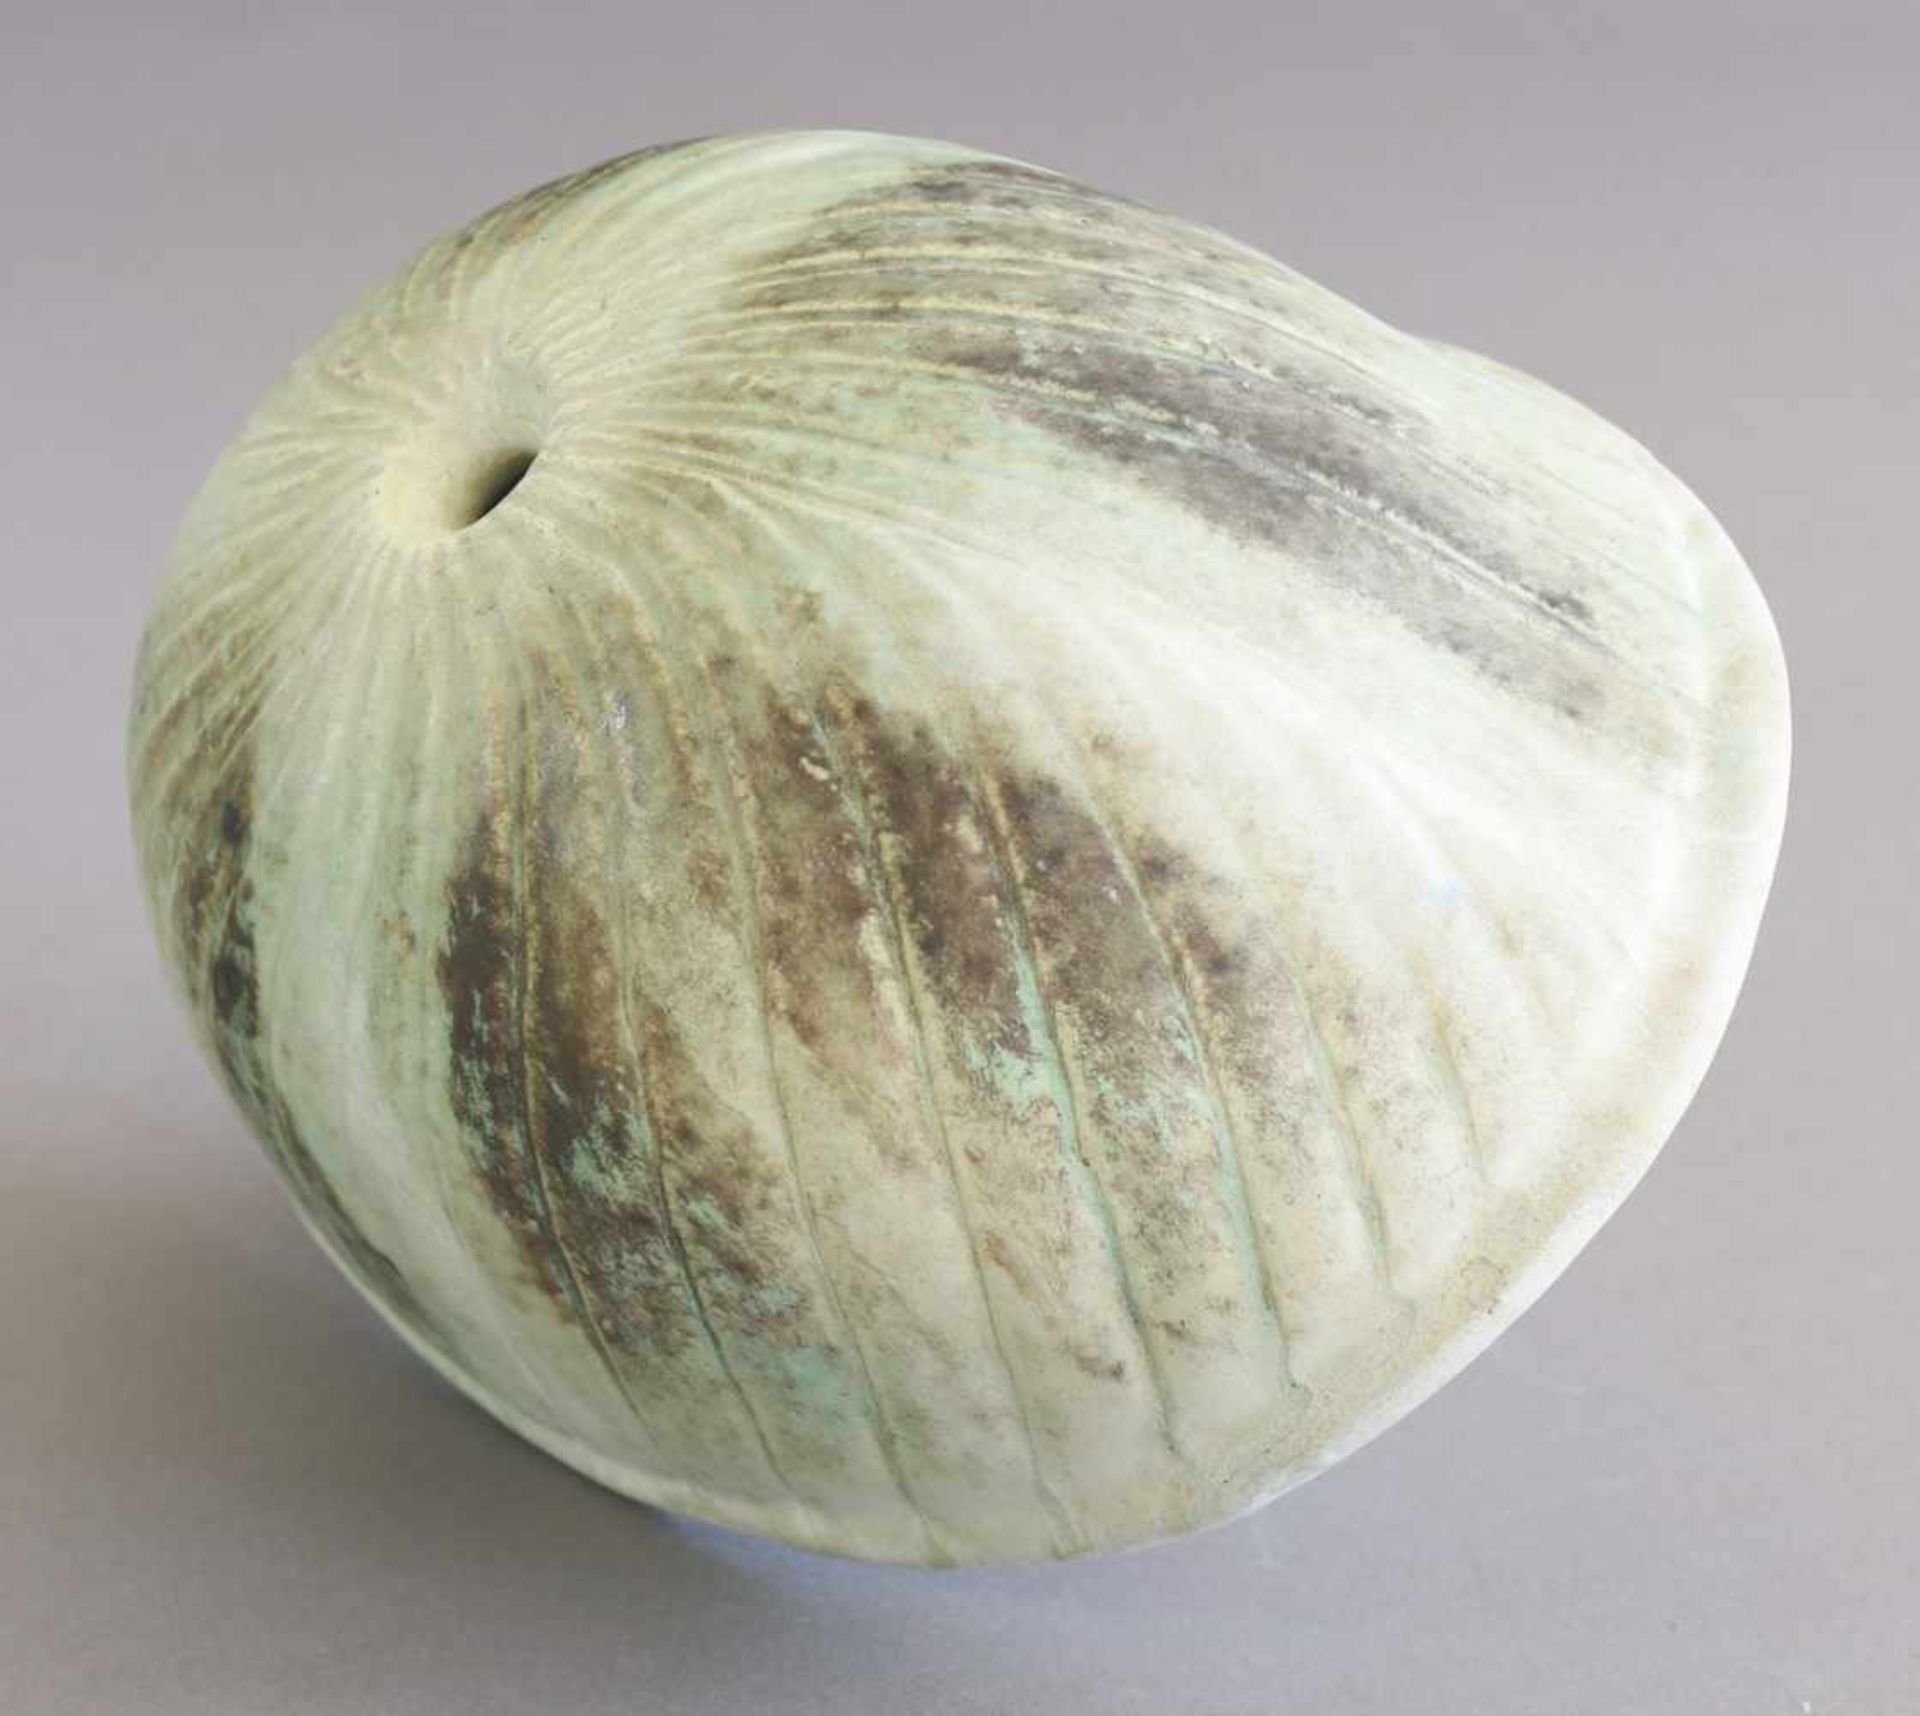 Otto MeierSkulpturale Vase. Keramik. Mehrtonig hellgrün-beige-, partiell olivfarbene Glasur. - Bild 2 aus 2